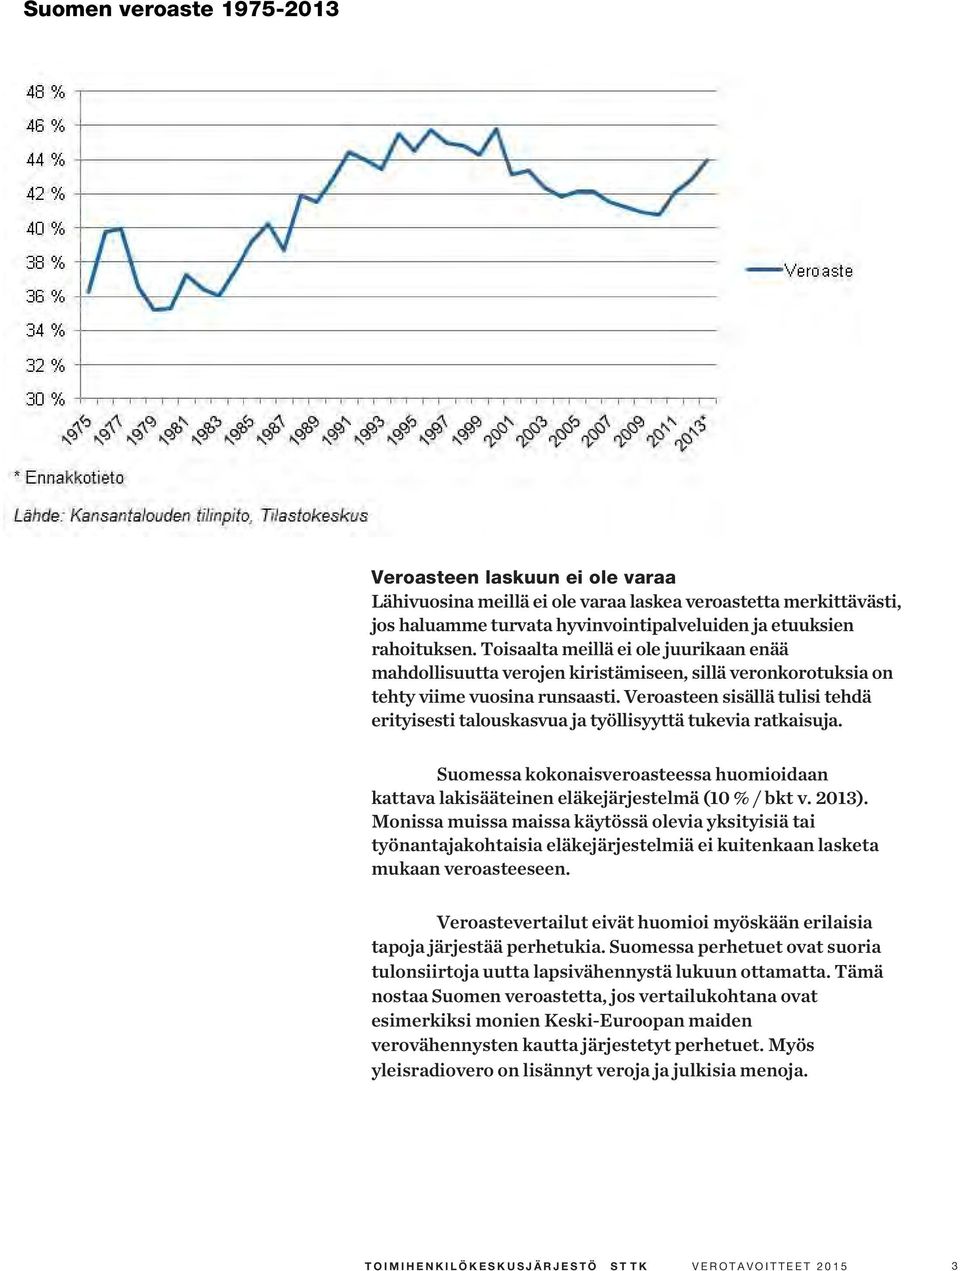 Veroasteen sisällä tulisi tehdä erityisesti talouskasvua ja työllisyyttä tukevia ratkaisuja. Suomessa kokonaisveroasteessa huomioidaan kattava lakisääteinen eläkejärjestelmä (10 % / bkt v. 2013).